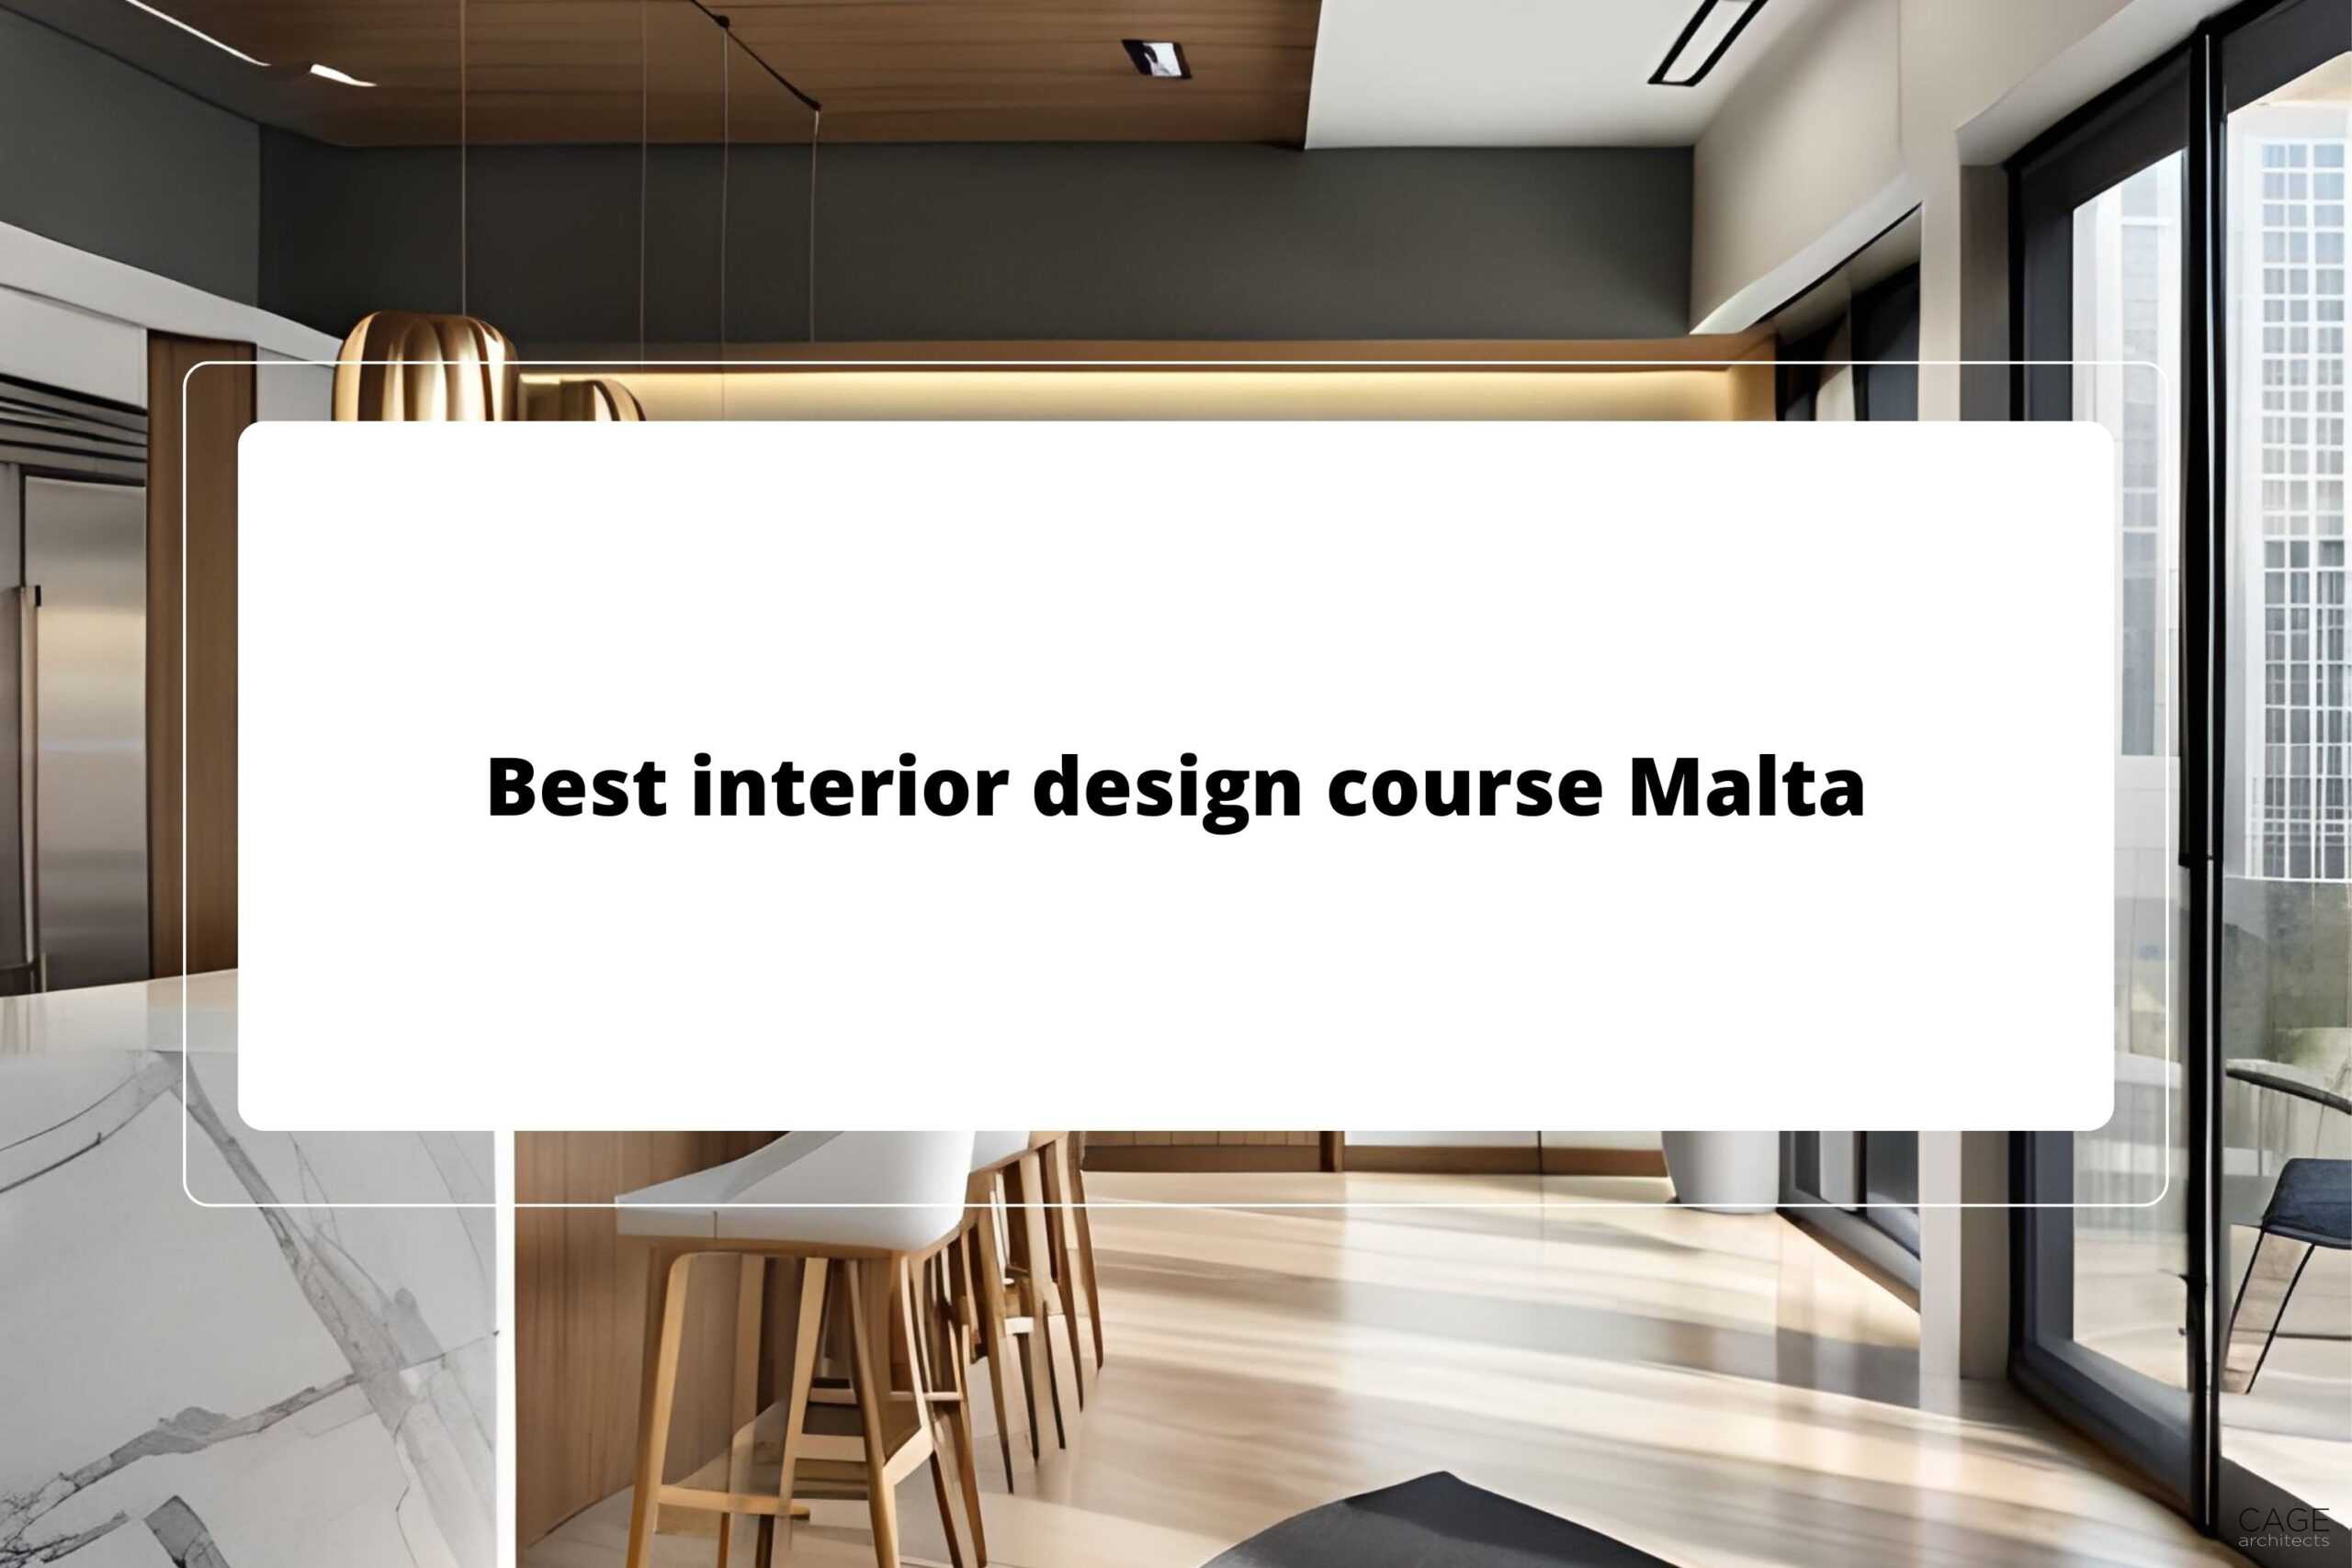 Best interior design course Malta